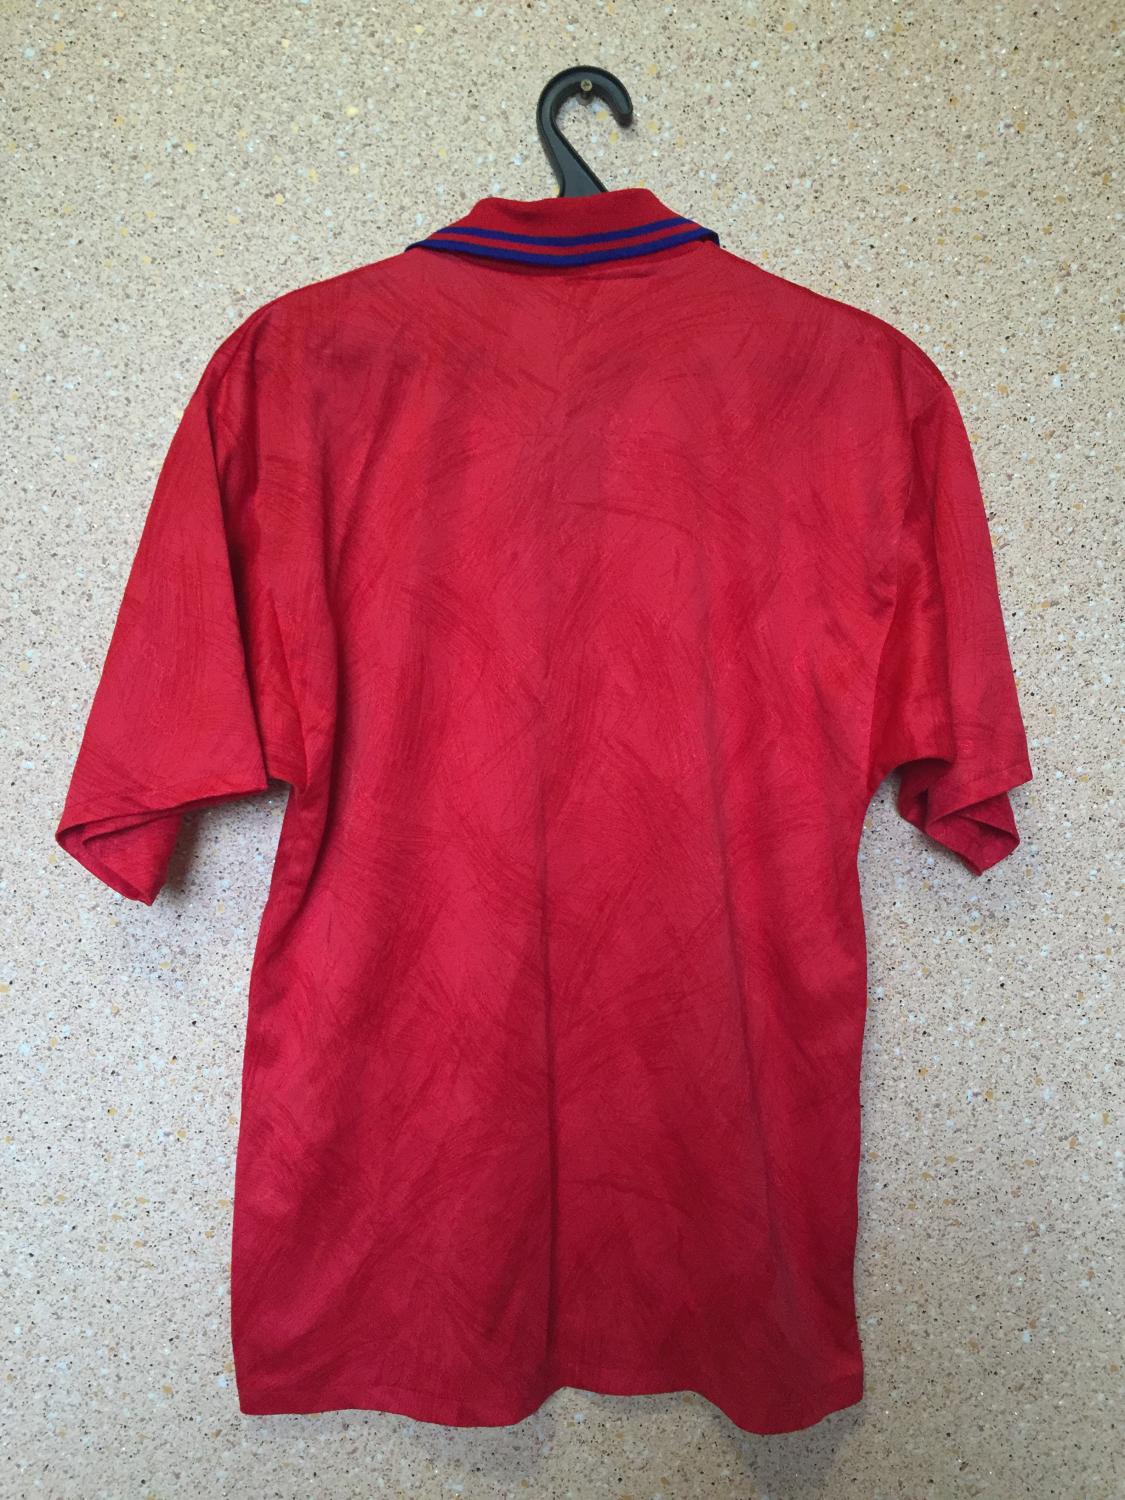 maillot équipe de southend united exterieur 1992-1994 rétro